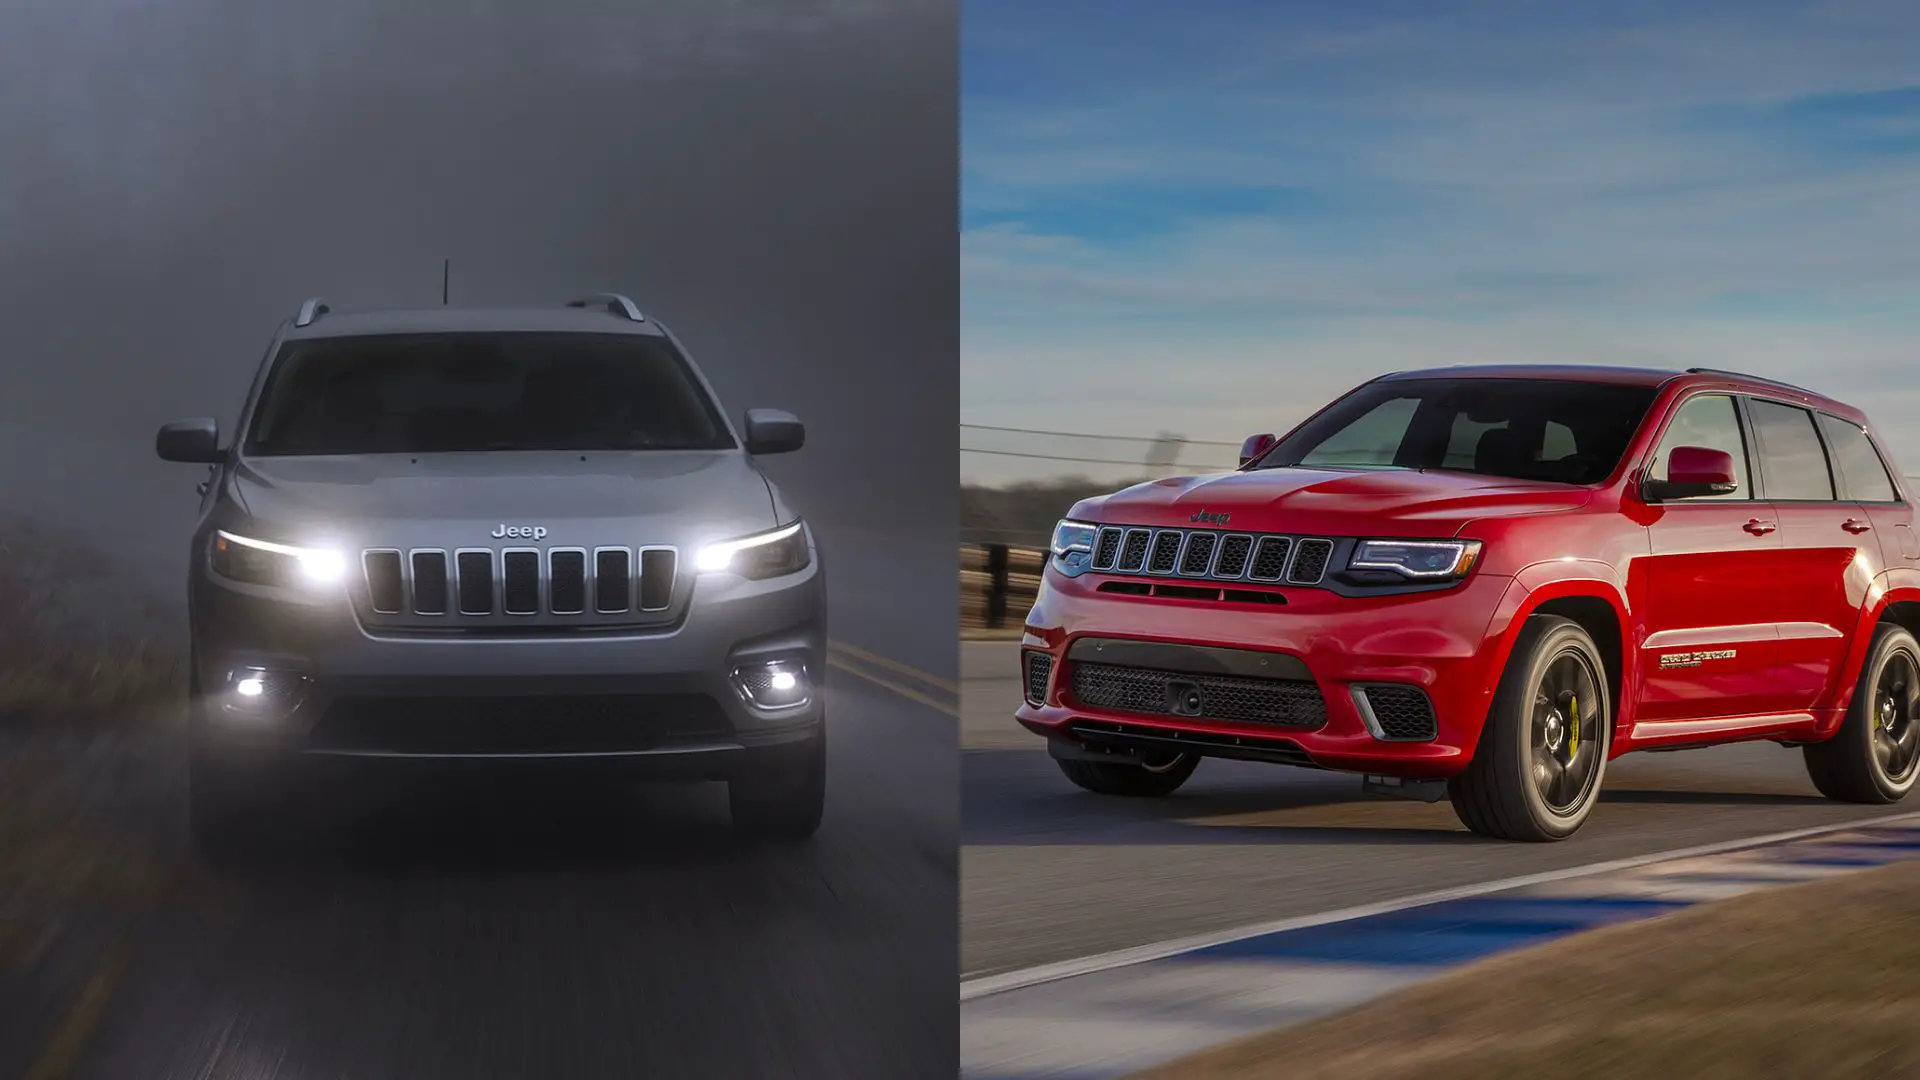 Jeep Cherokee vs Grand Cherokee SUV comparison